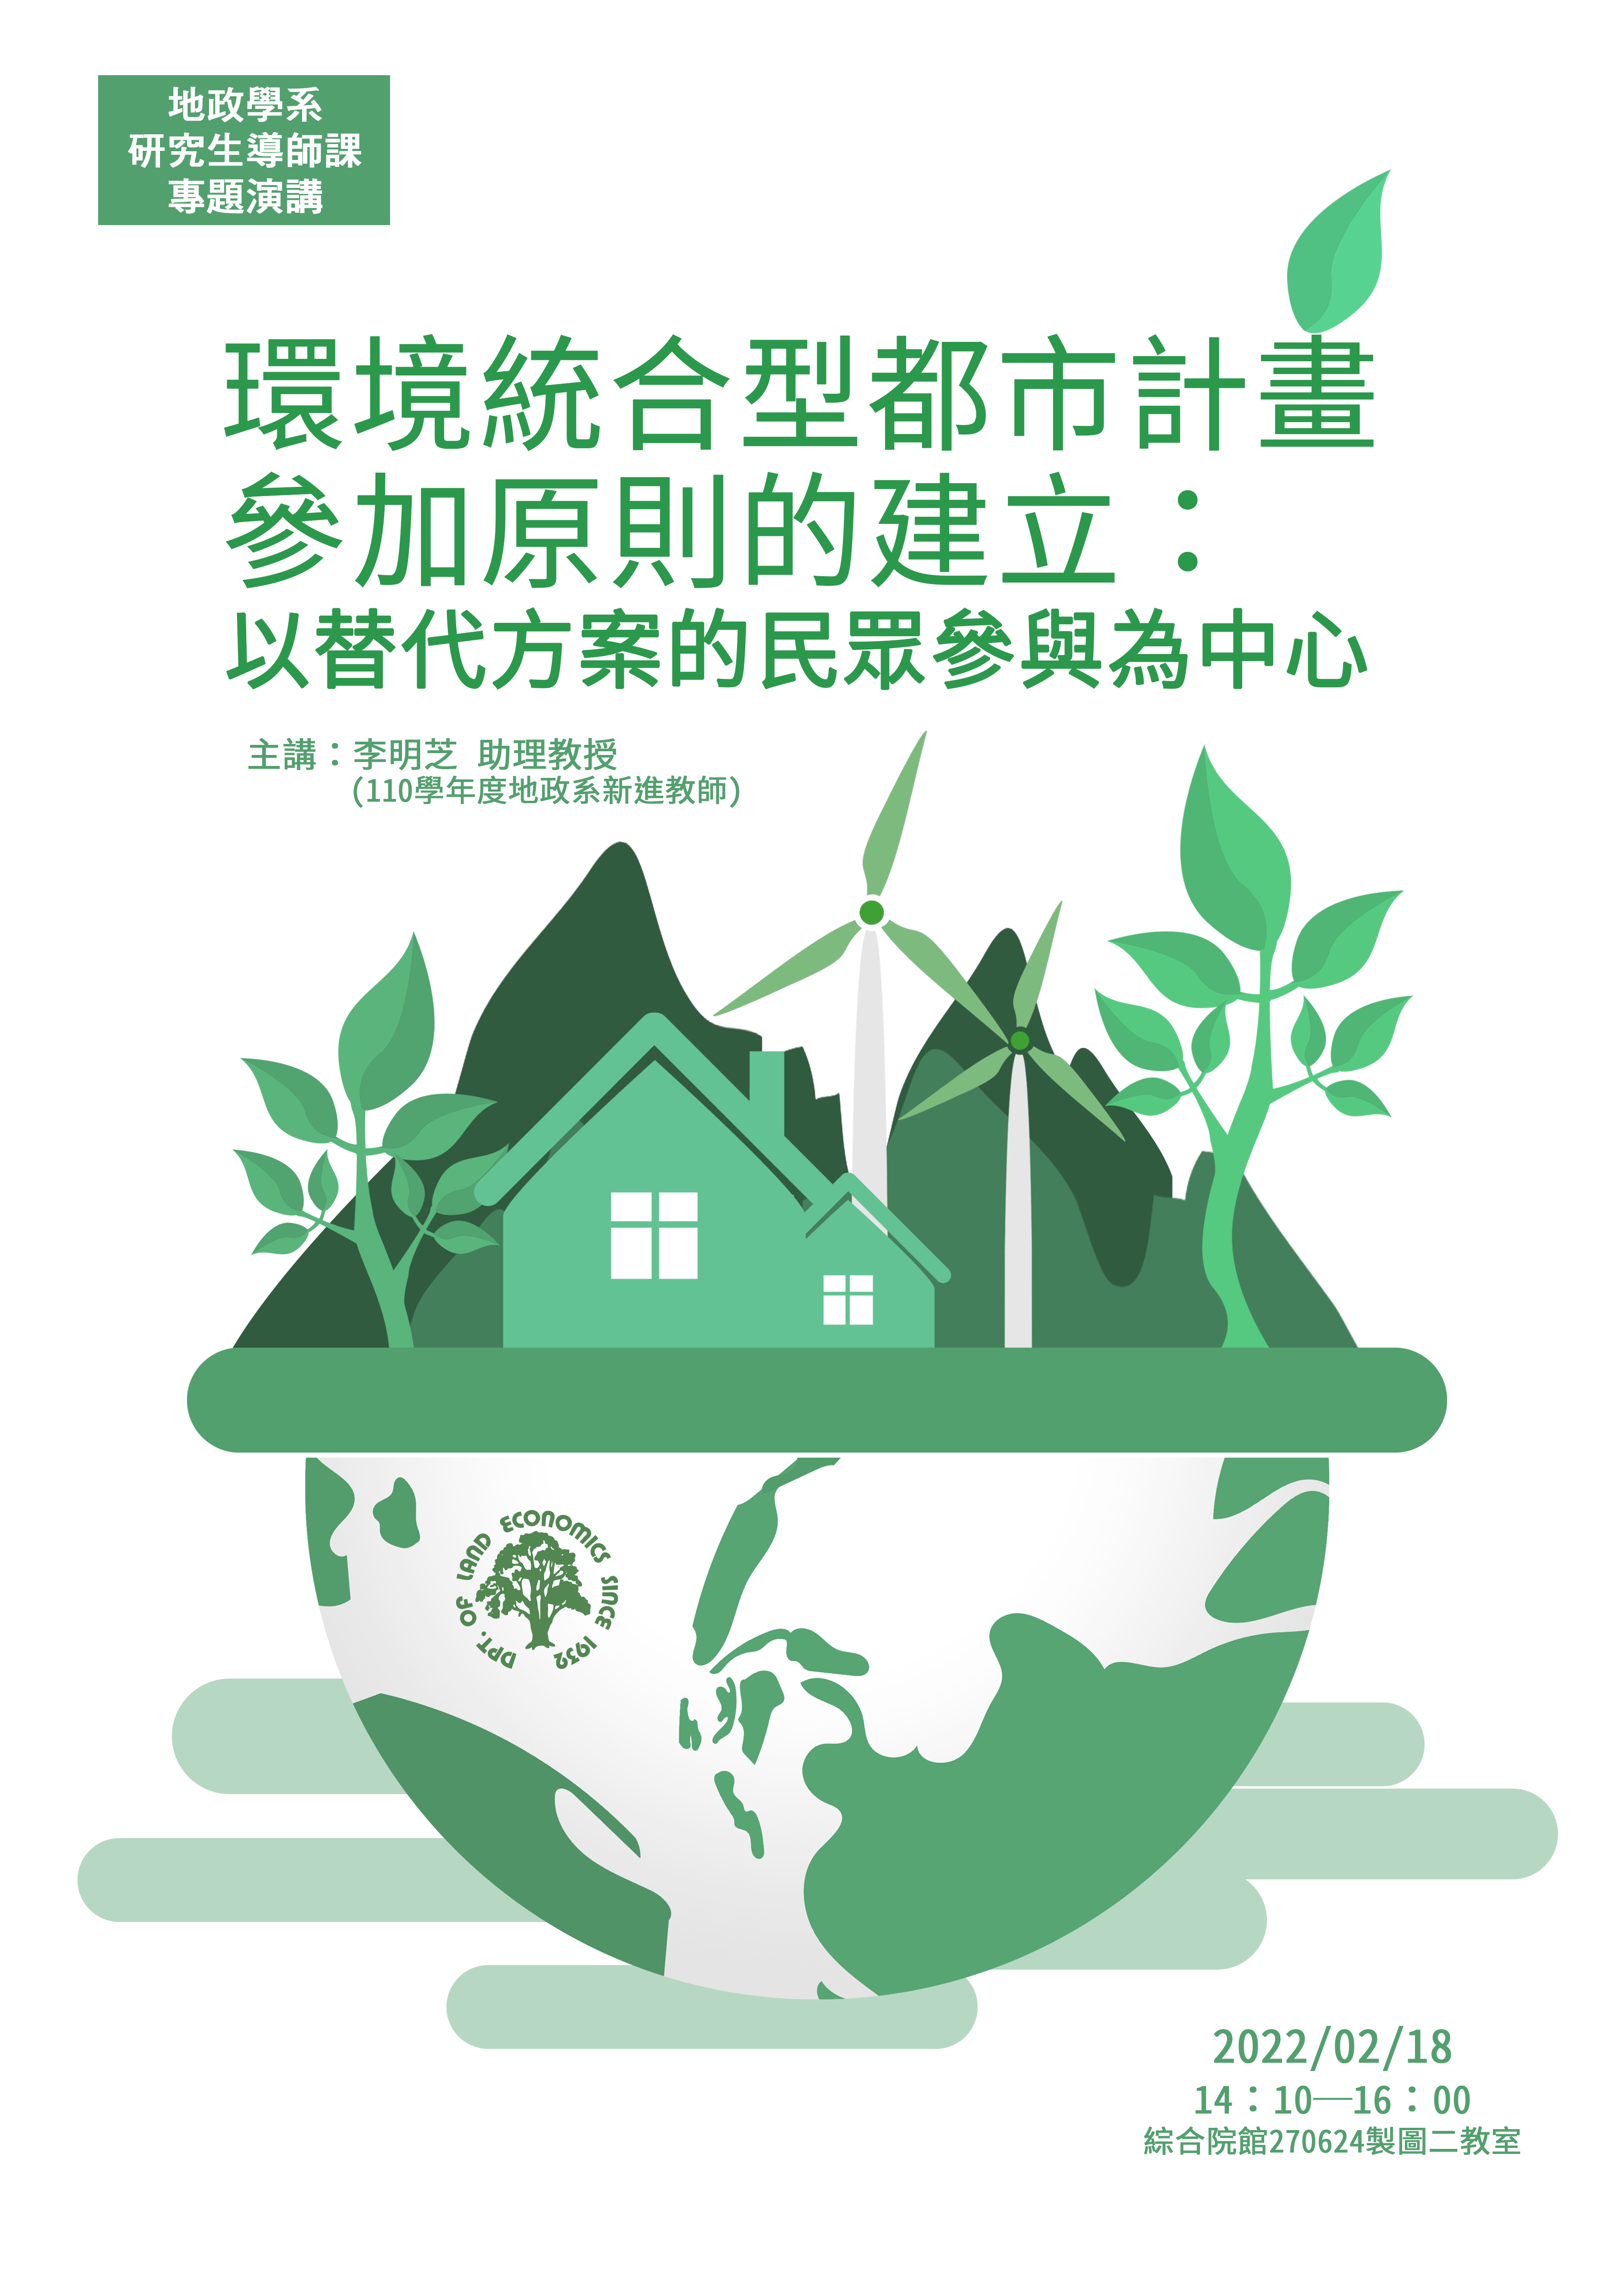  【地政學系新進教師專題演講】「環境統合型都市計畫參加原則的建立：以替代方案的民眾參與為中心」─李明芝老師